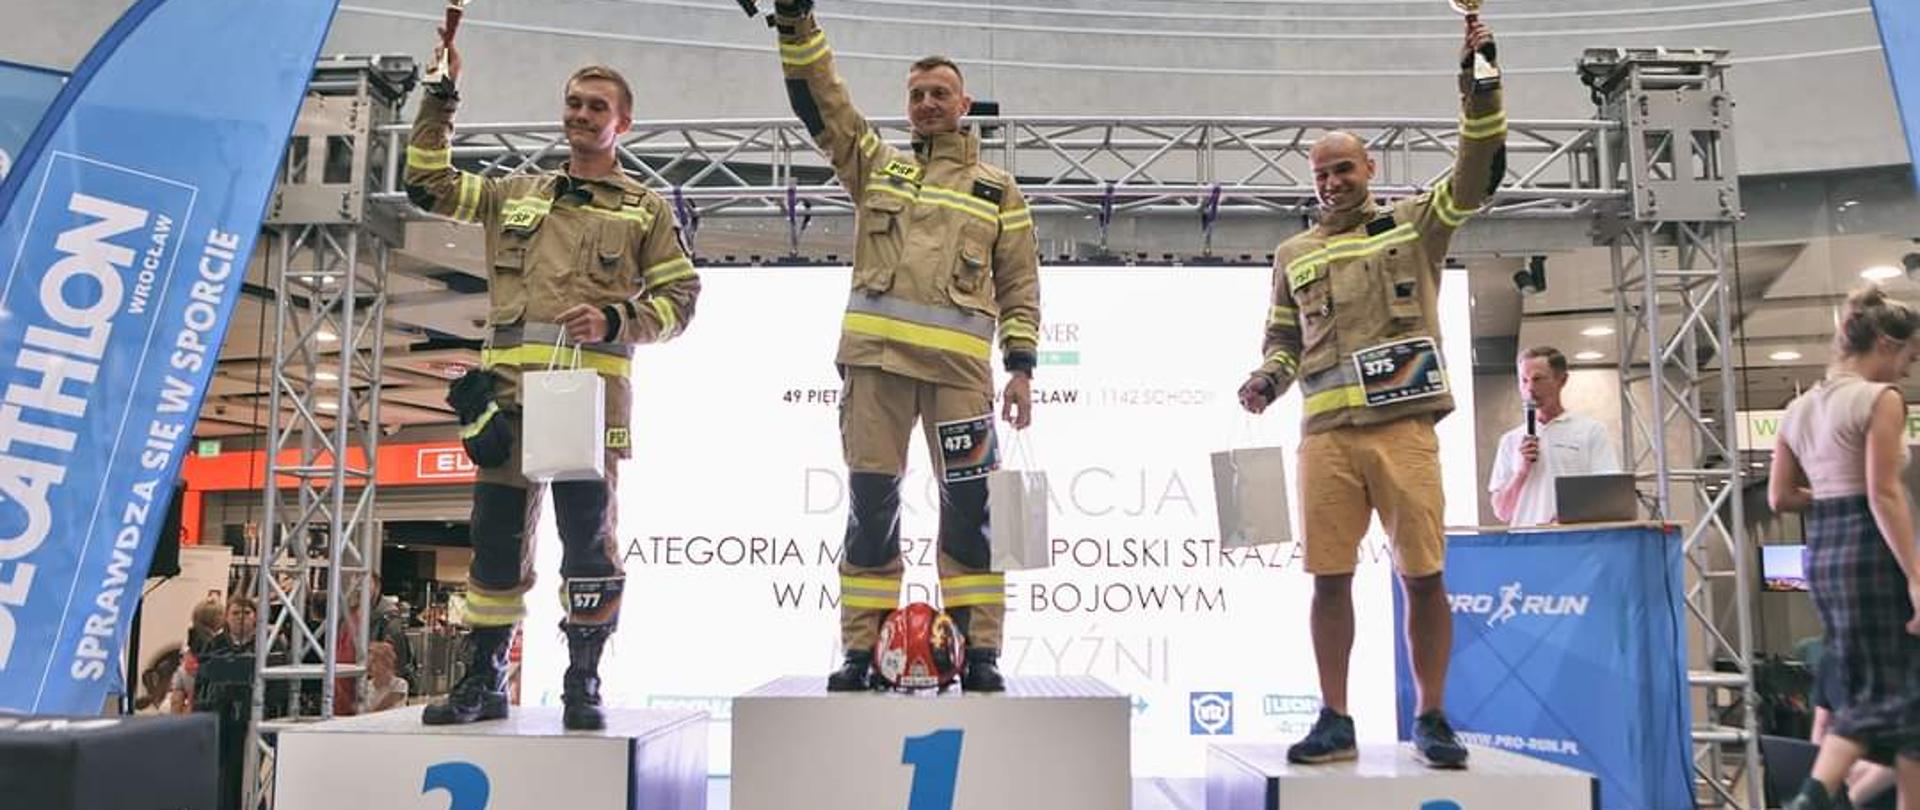 Zdjęcie przedstawia strażaków podczas zawodów Sky Tower Run Wrocław
